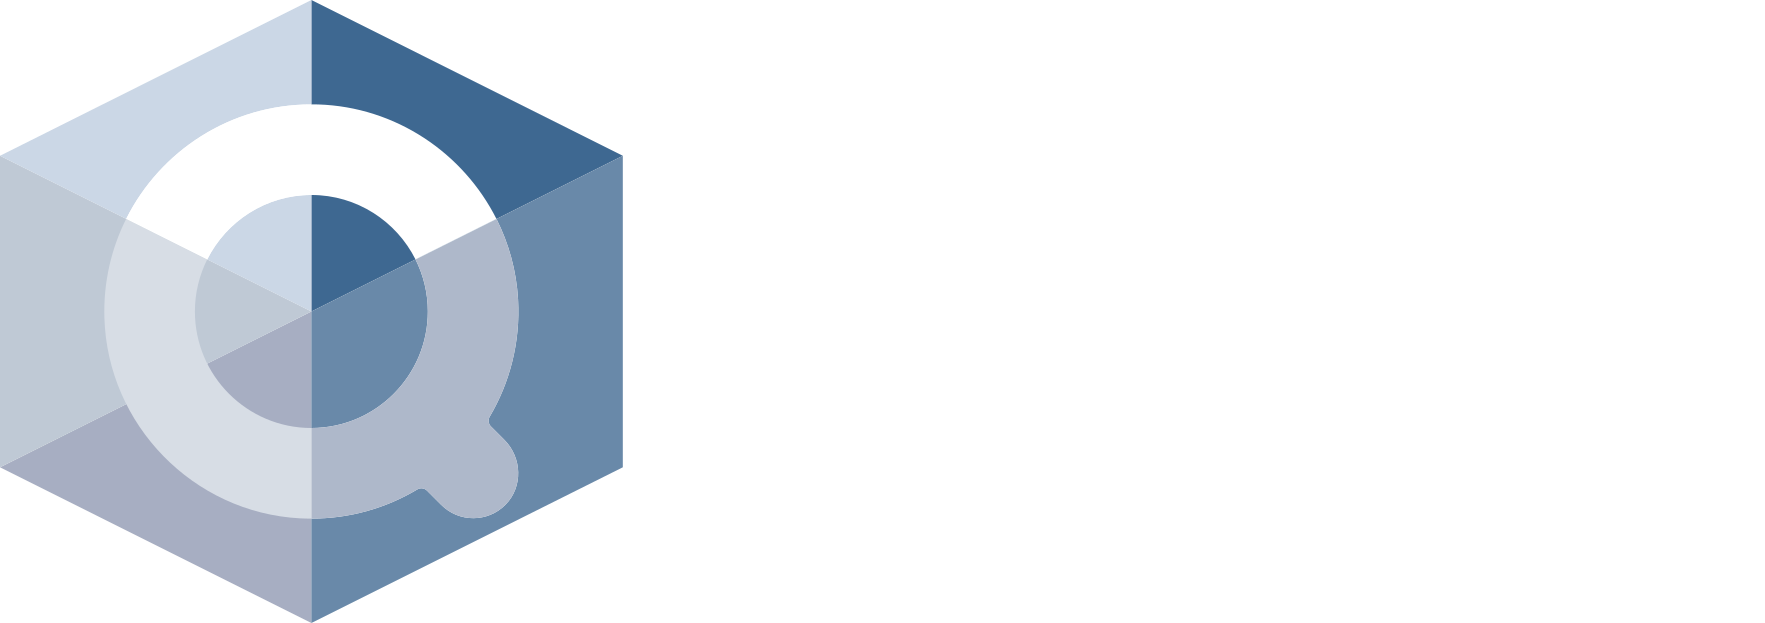 Quadrum-Capital